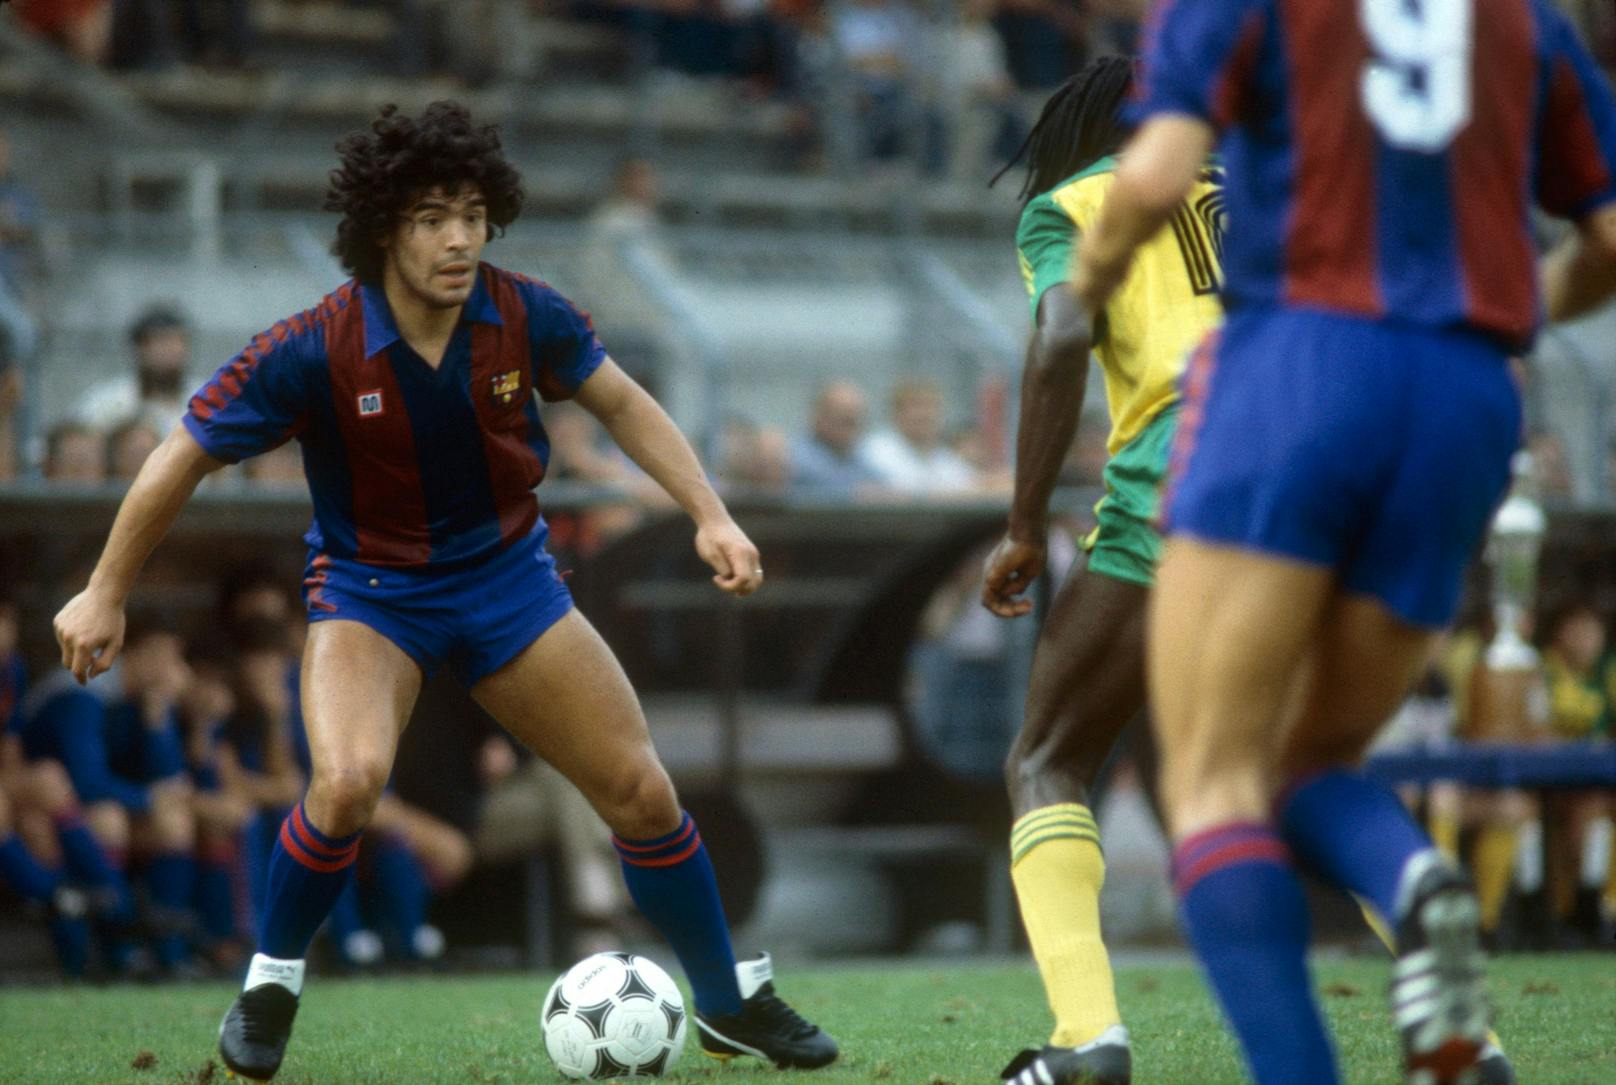 1982 wechselt Maradona aus Argentinien nach Europa. Seine erste Station: der FC Barcelona. In 43 Spielen bringt er es bei den Katalanen auf 30 Tore.